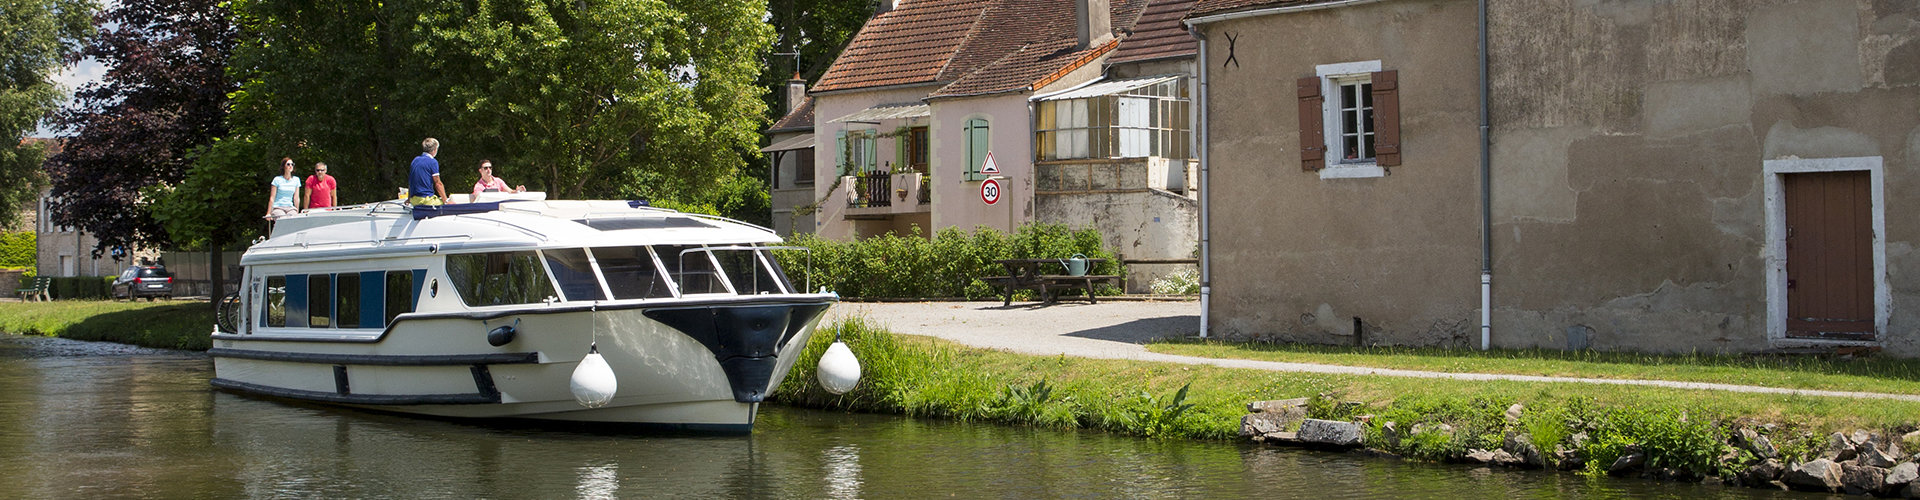 Crociera fluviale senza patente sul Canal du Rhône au Rhin